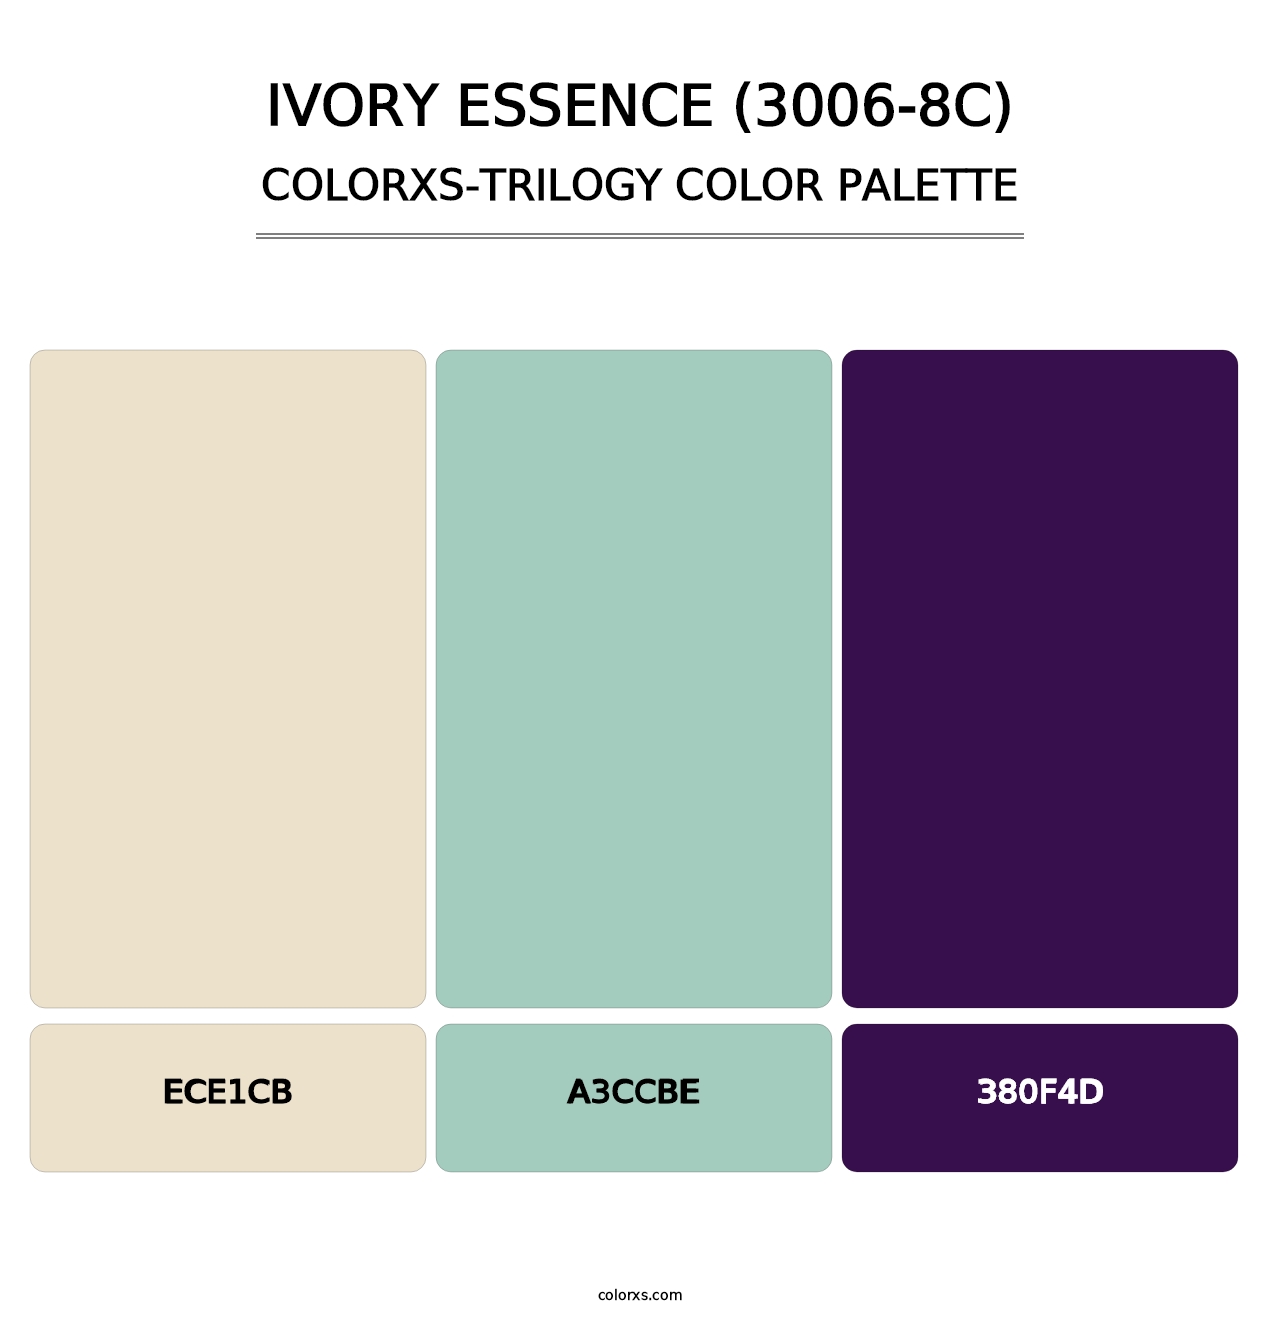 Ivory Essence (3006-8C) - Colorxs Trilogy Palette